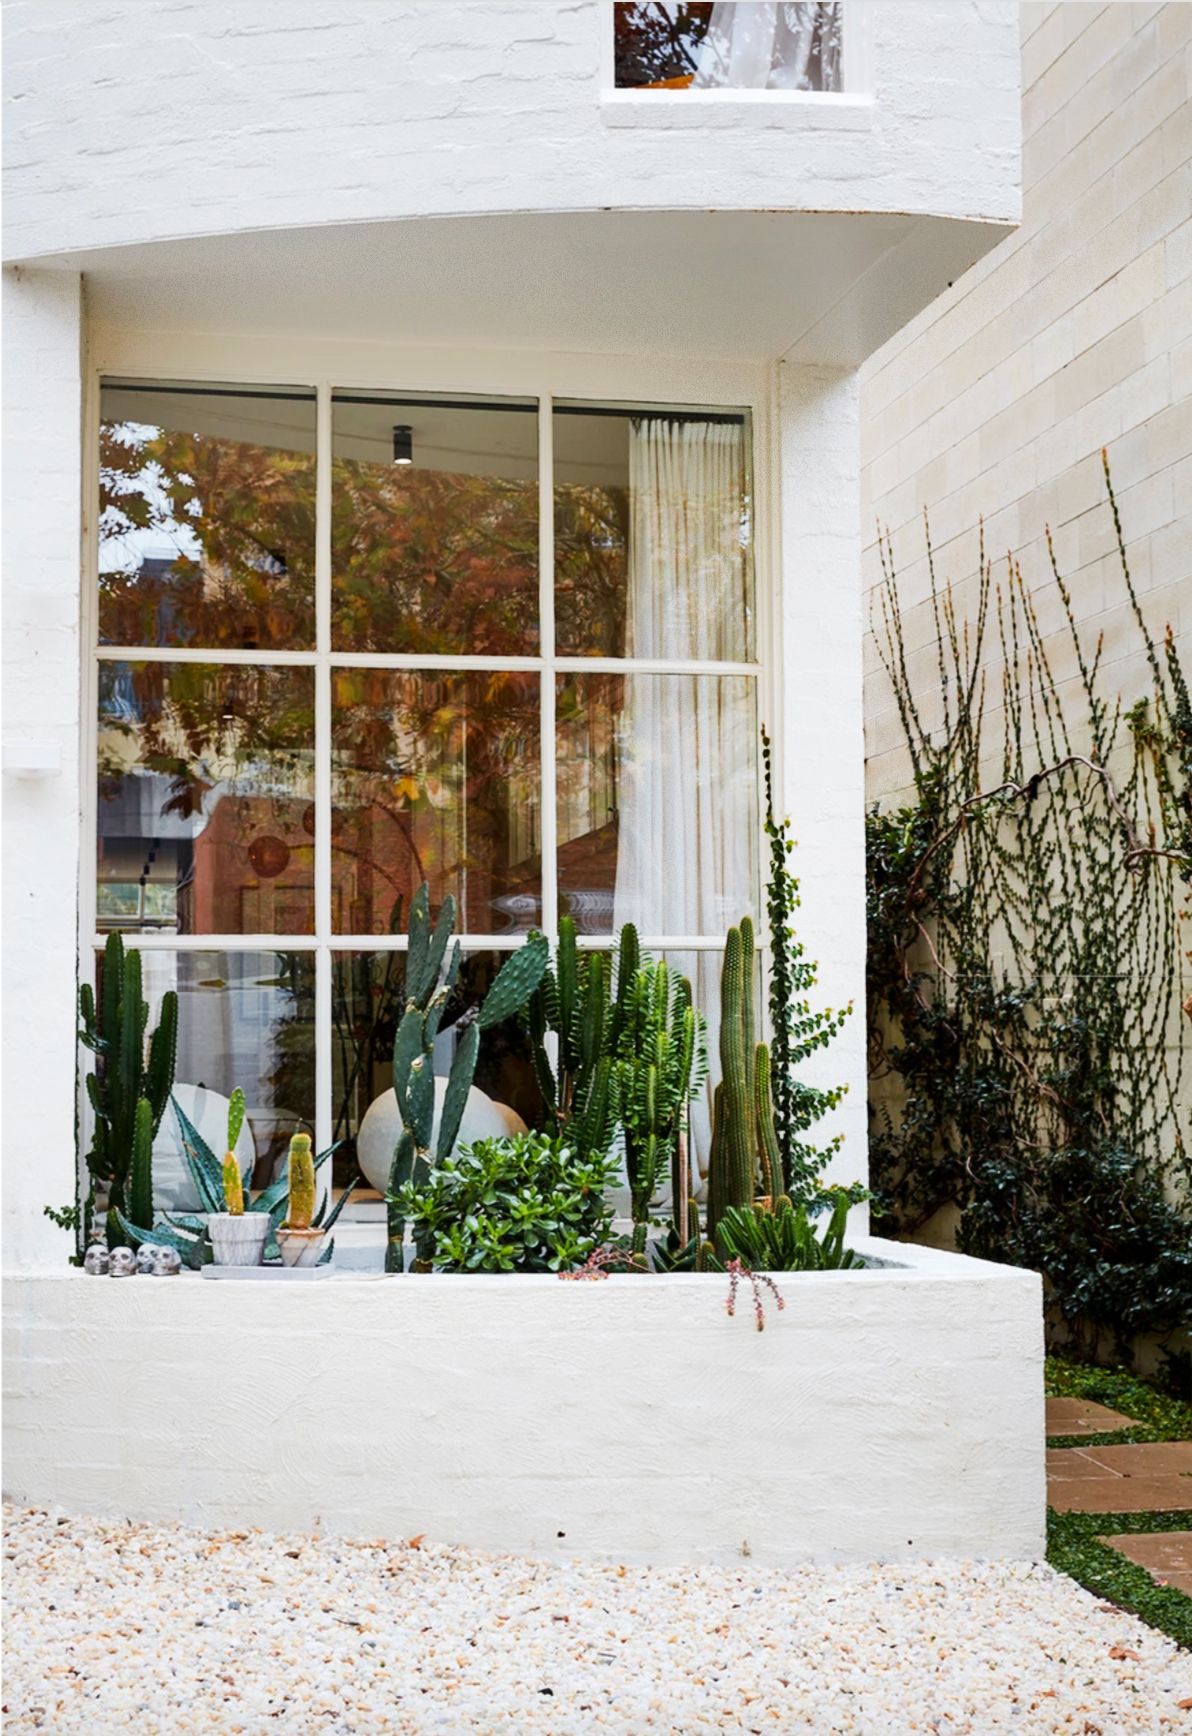 34 Creative Small Garden Ideas - Indoor and Outdoor Garden Designs ...